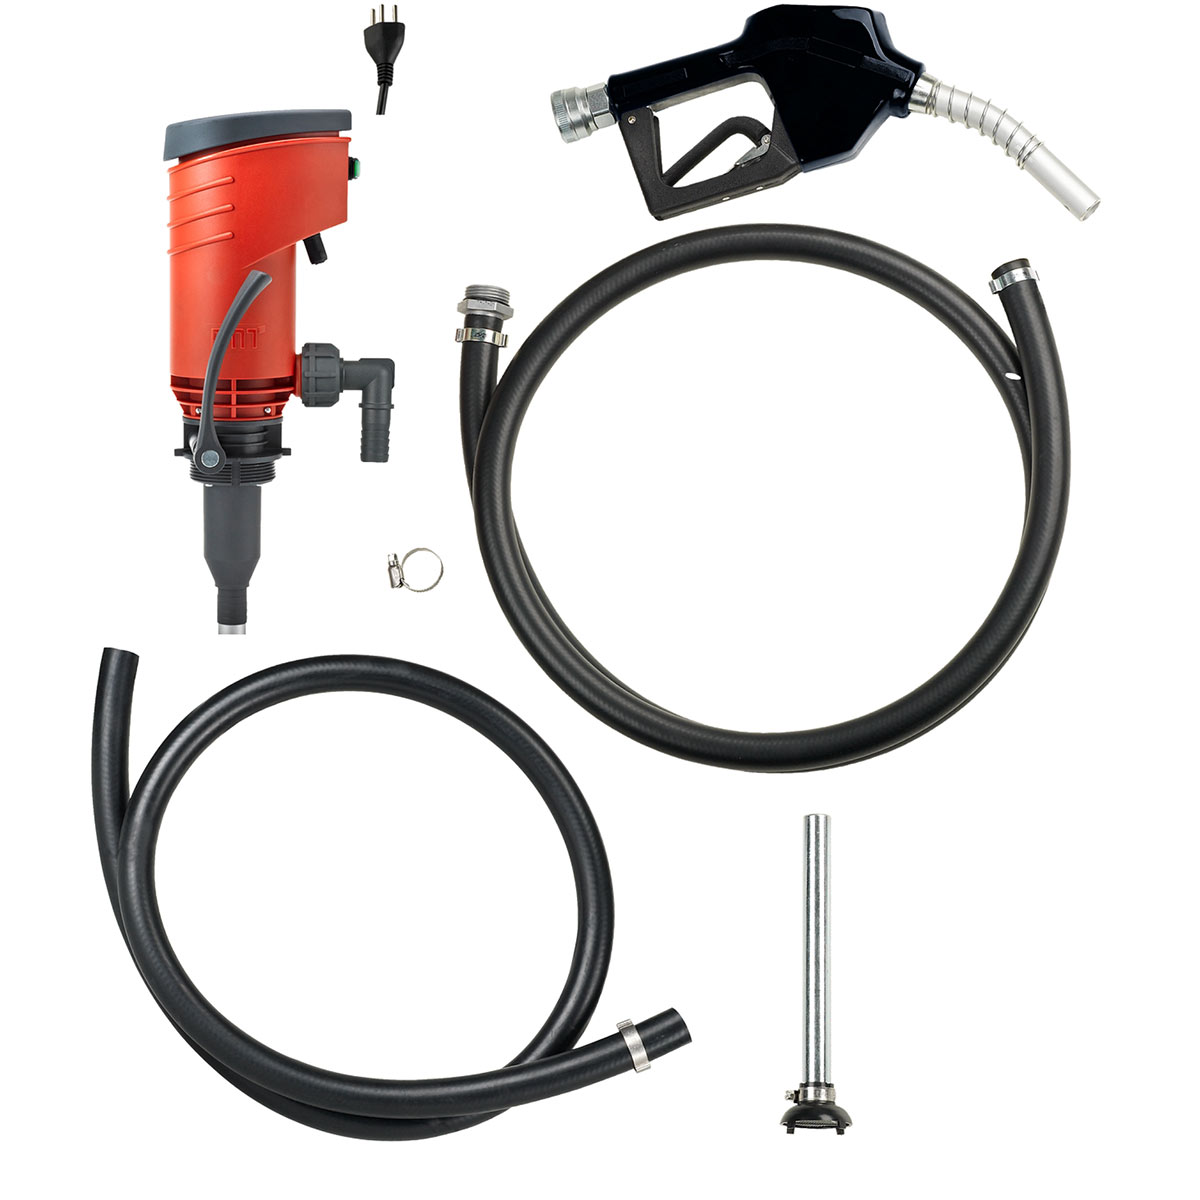 Pompe à huile électrique PREMAxx A, Convient pour le diesel et le fuel, 230 V, 320 W, 48 l/min.